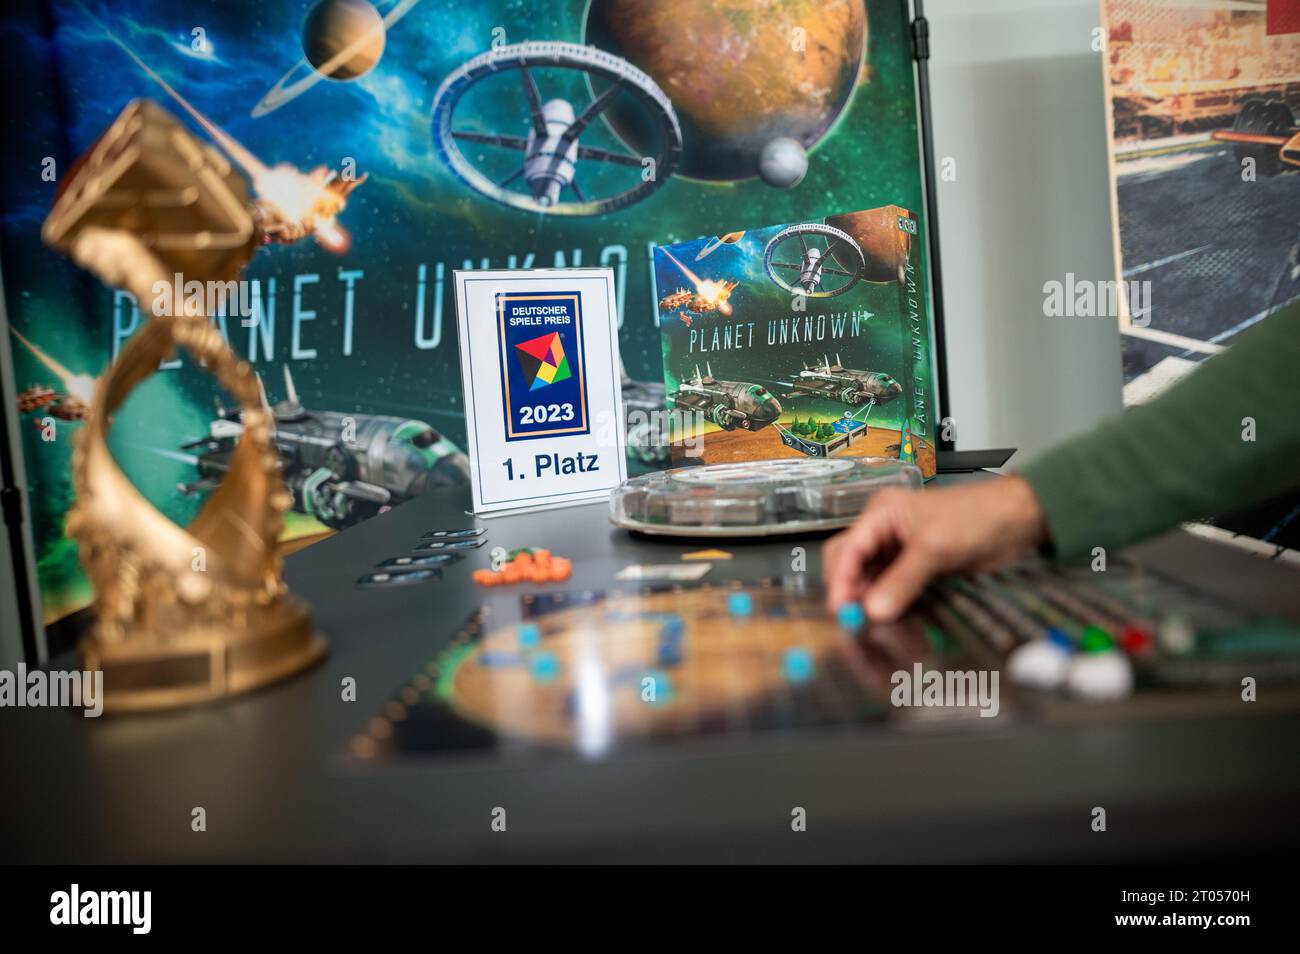 Essen, Germania. 4 ottobre 2023. Il gioco "Planet Unknown" sarà presentato  come il miglior gioco del 2023 al "Novelty Show" alla fiera internazionale  "Spiel'23". Un giorno prima dell'inizio ufficiale della fiera, si